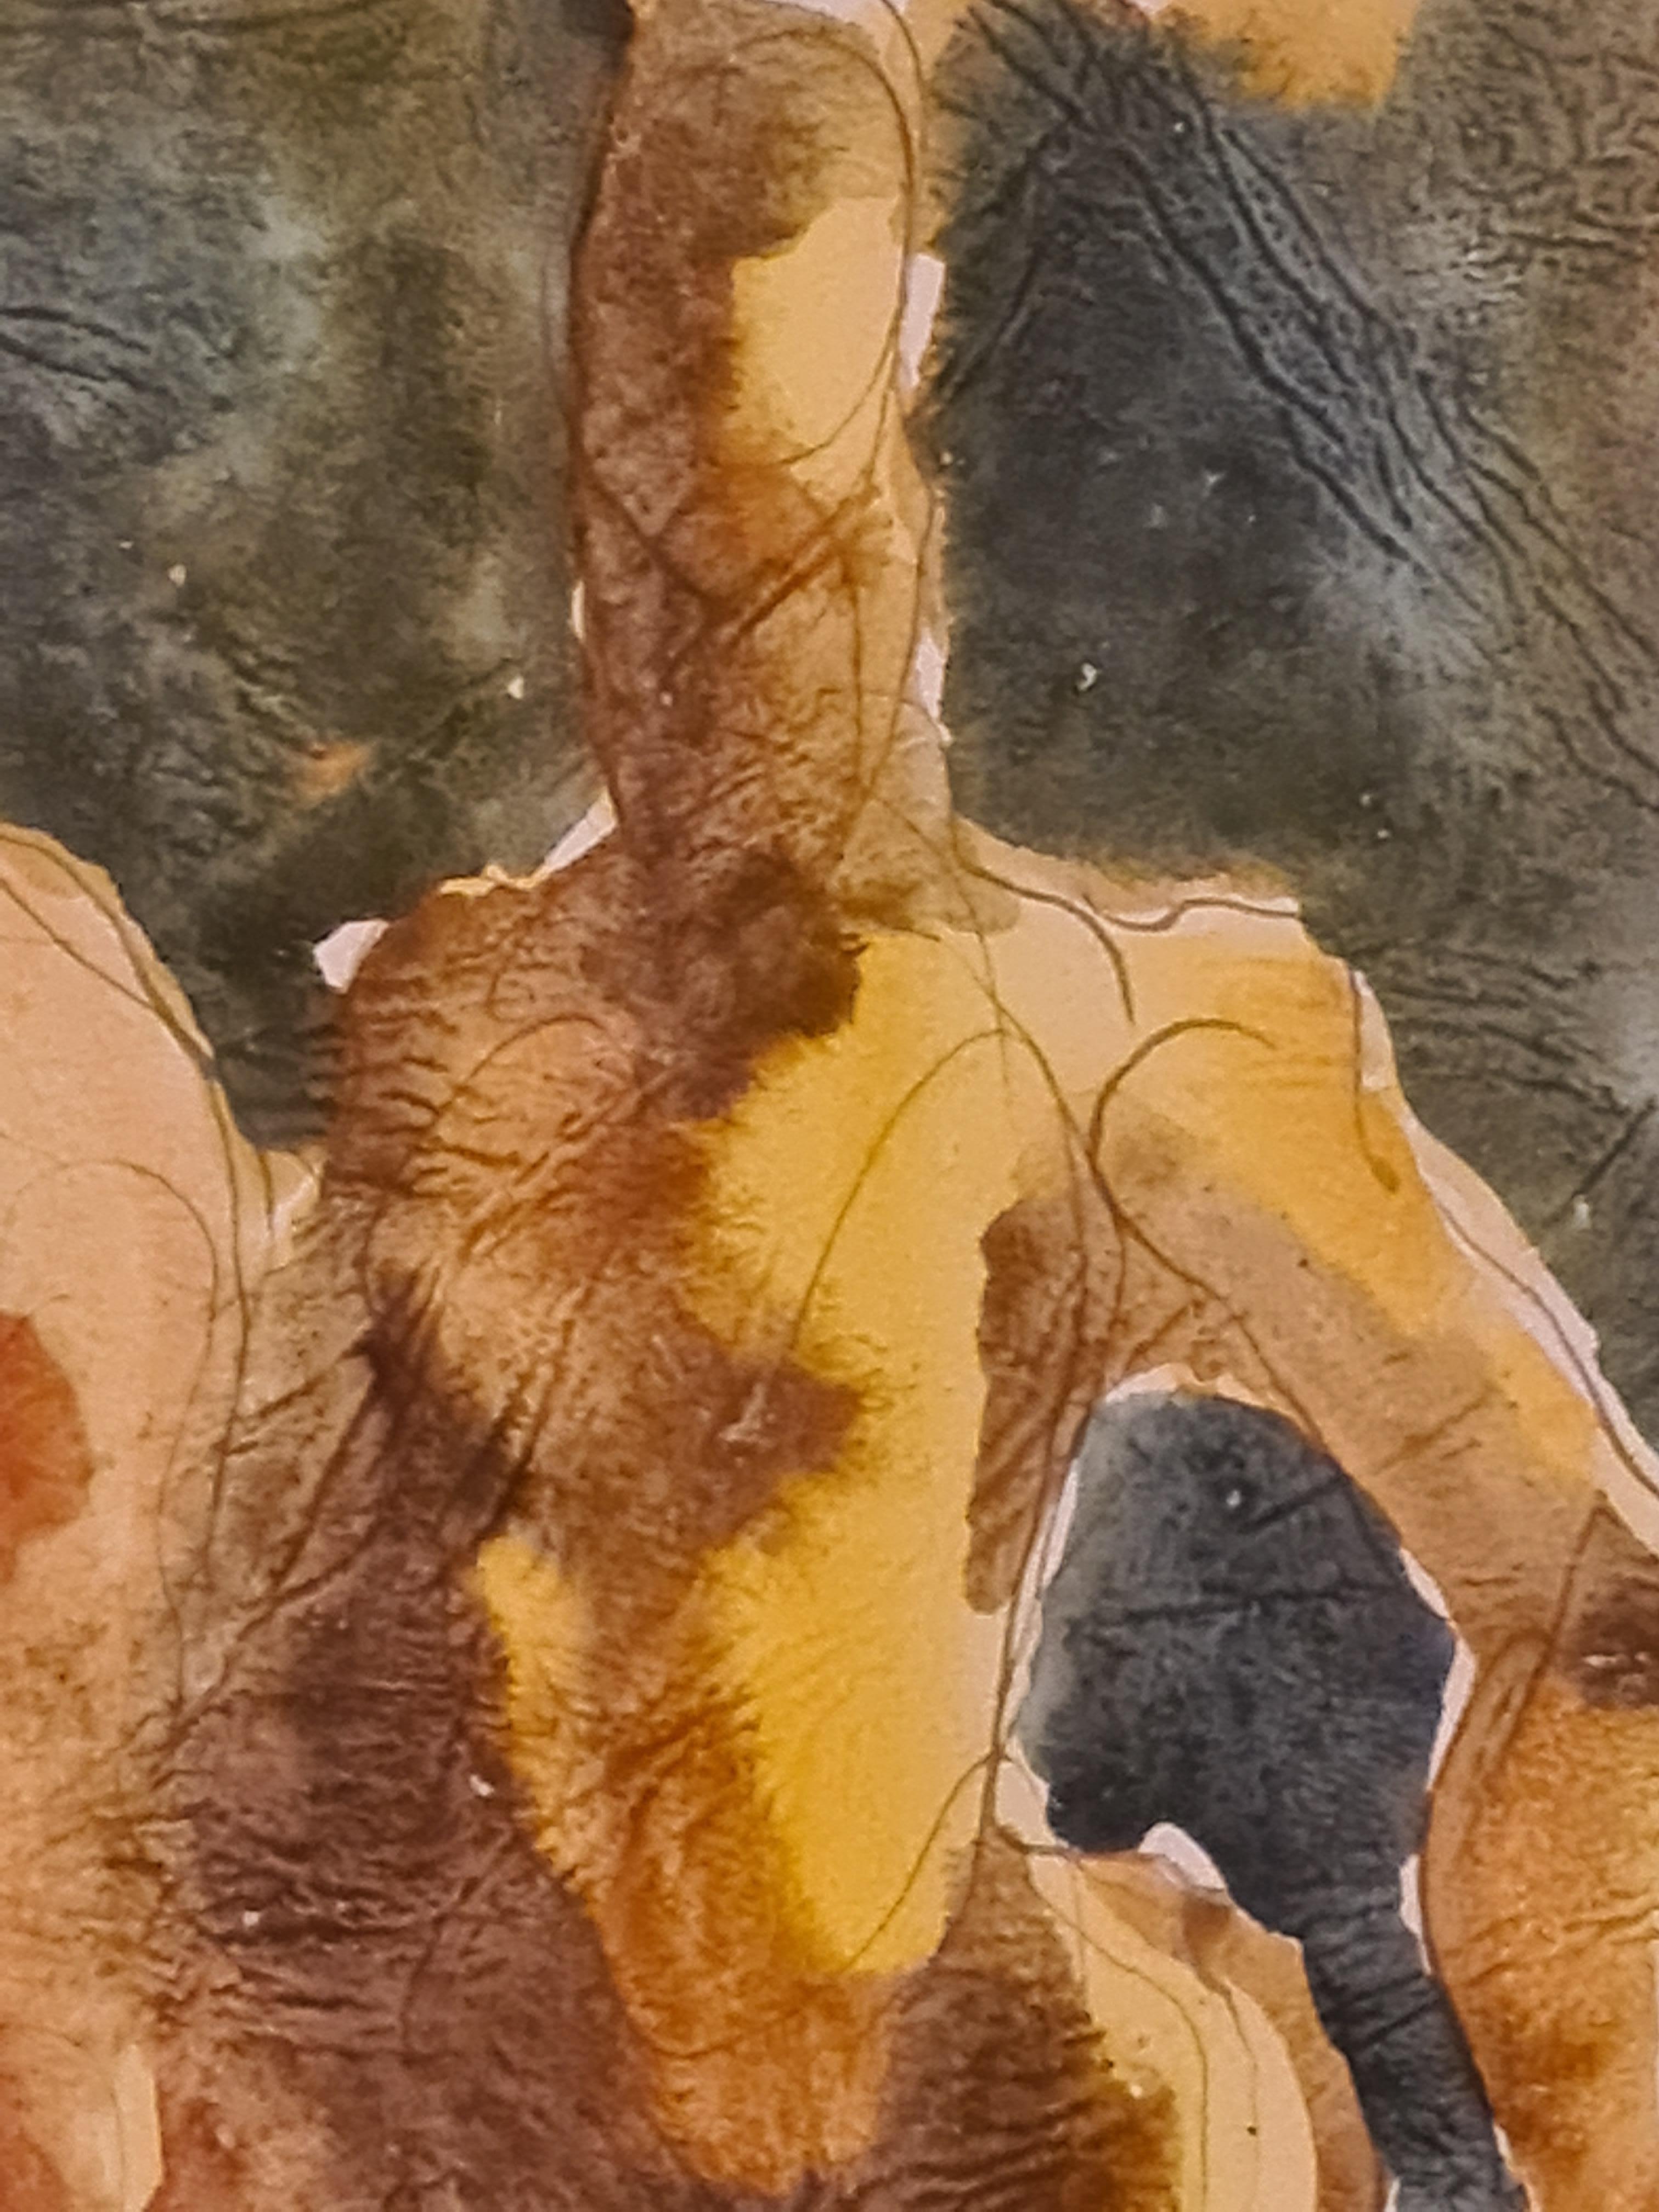 Aquarelle et gouache sur papier fait main de la fin du milieu du siècle dernier représentant un couple de danseurs par Damien Hermellin. Signé et daté en bas à droite. Présenté dans un cadre Louis XV en bois, plâtre et dorure.

Hermellin est bien